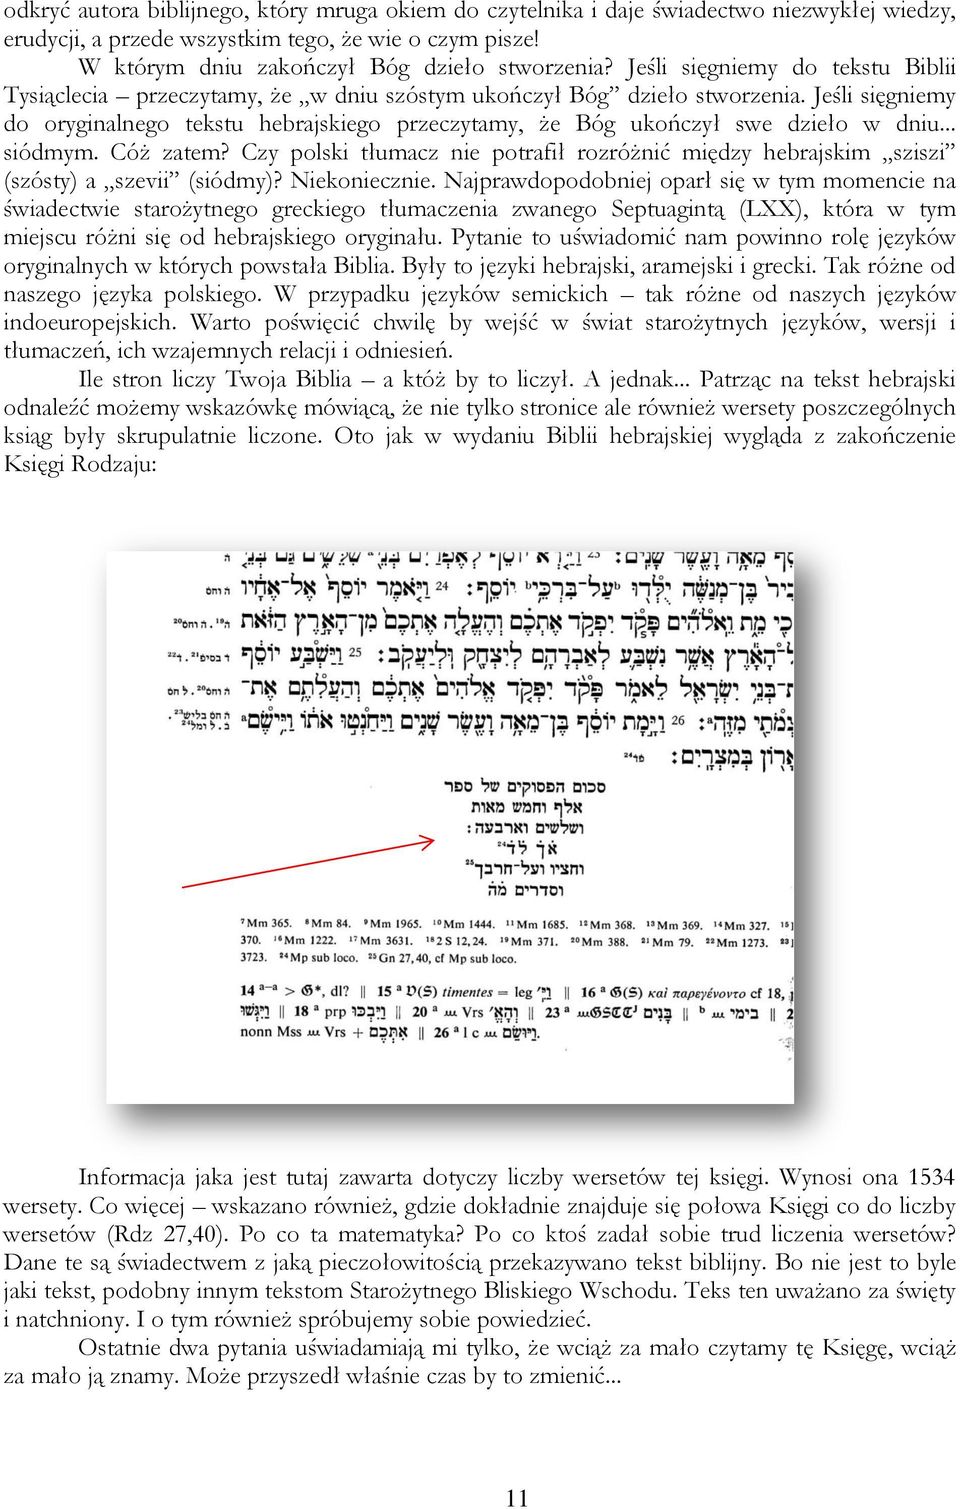 Jeśli sięgniemy do oryginalnego tekstu hebrajskiego przeczytamy, że Bóg ukończył swe dzieło w dniu... siódmym. Cóż zatem?